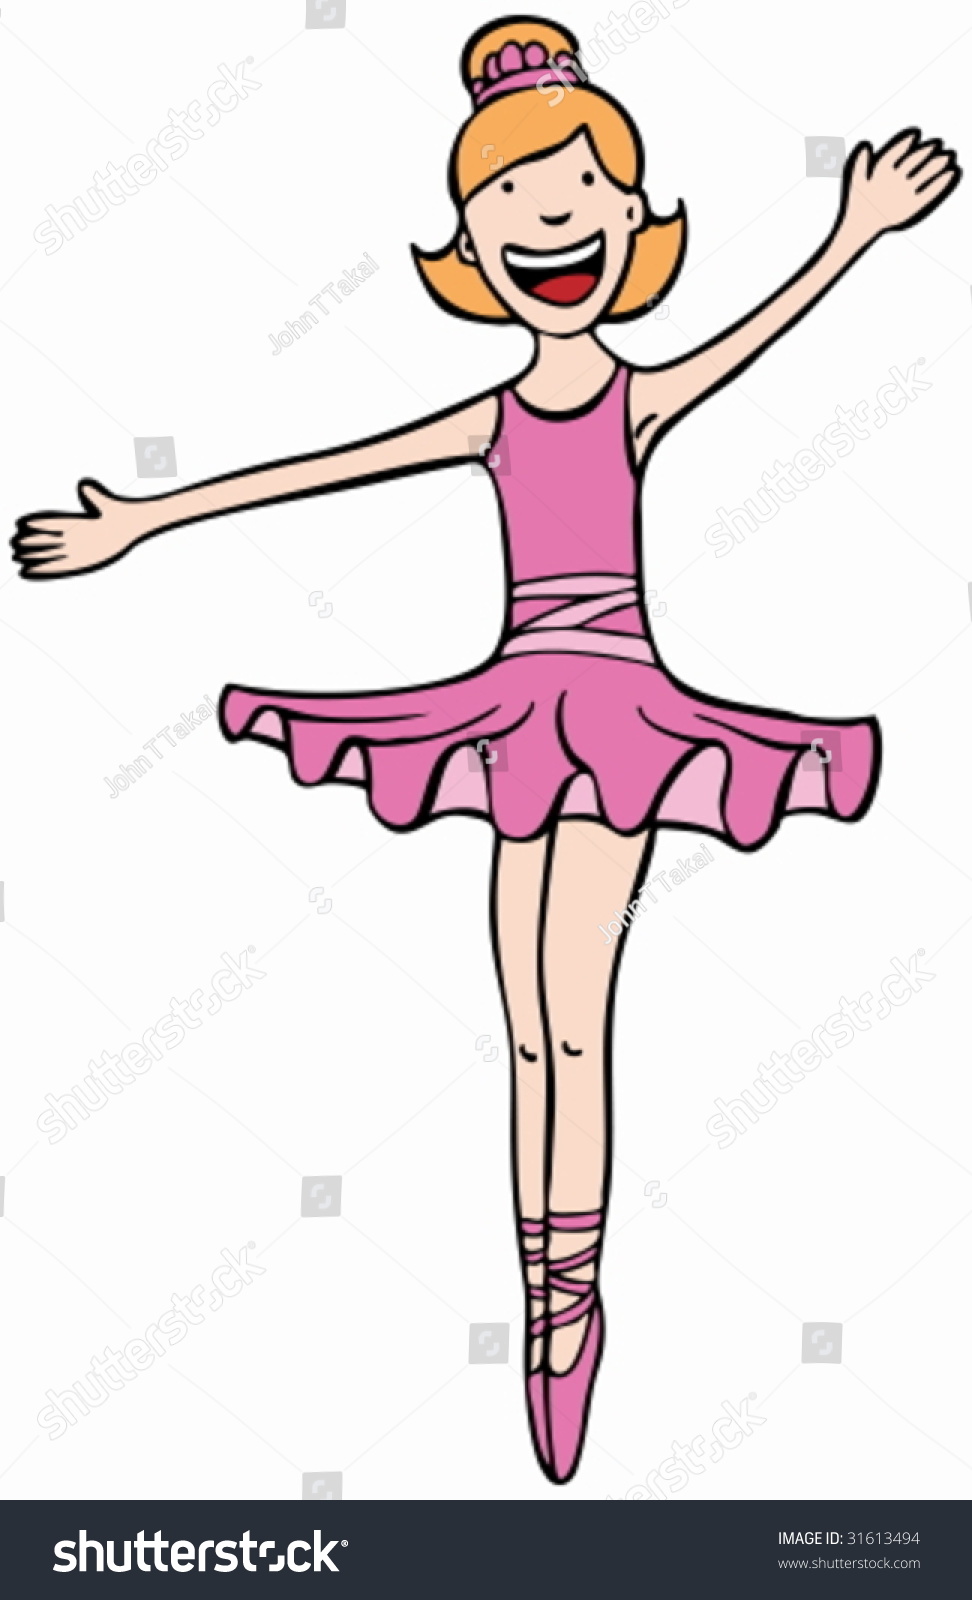 Ballerina Dancing Girl Cartoon Stock Vector 31613494 Shutterstock 